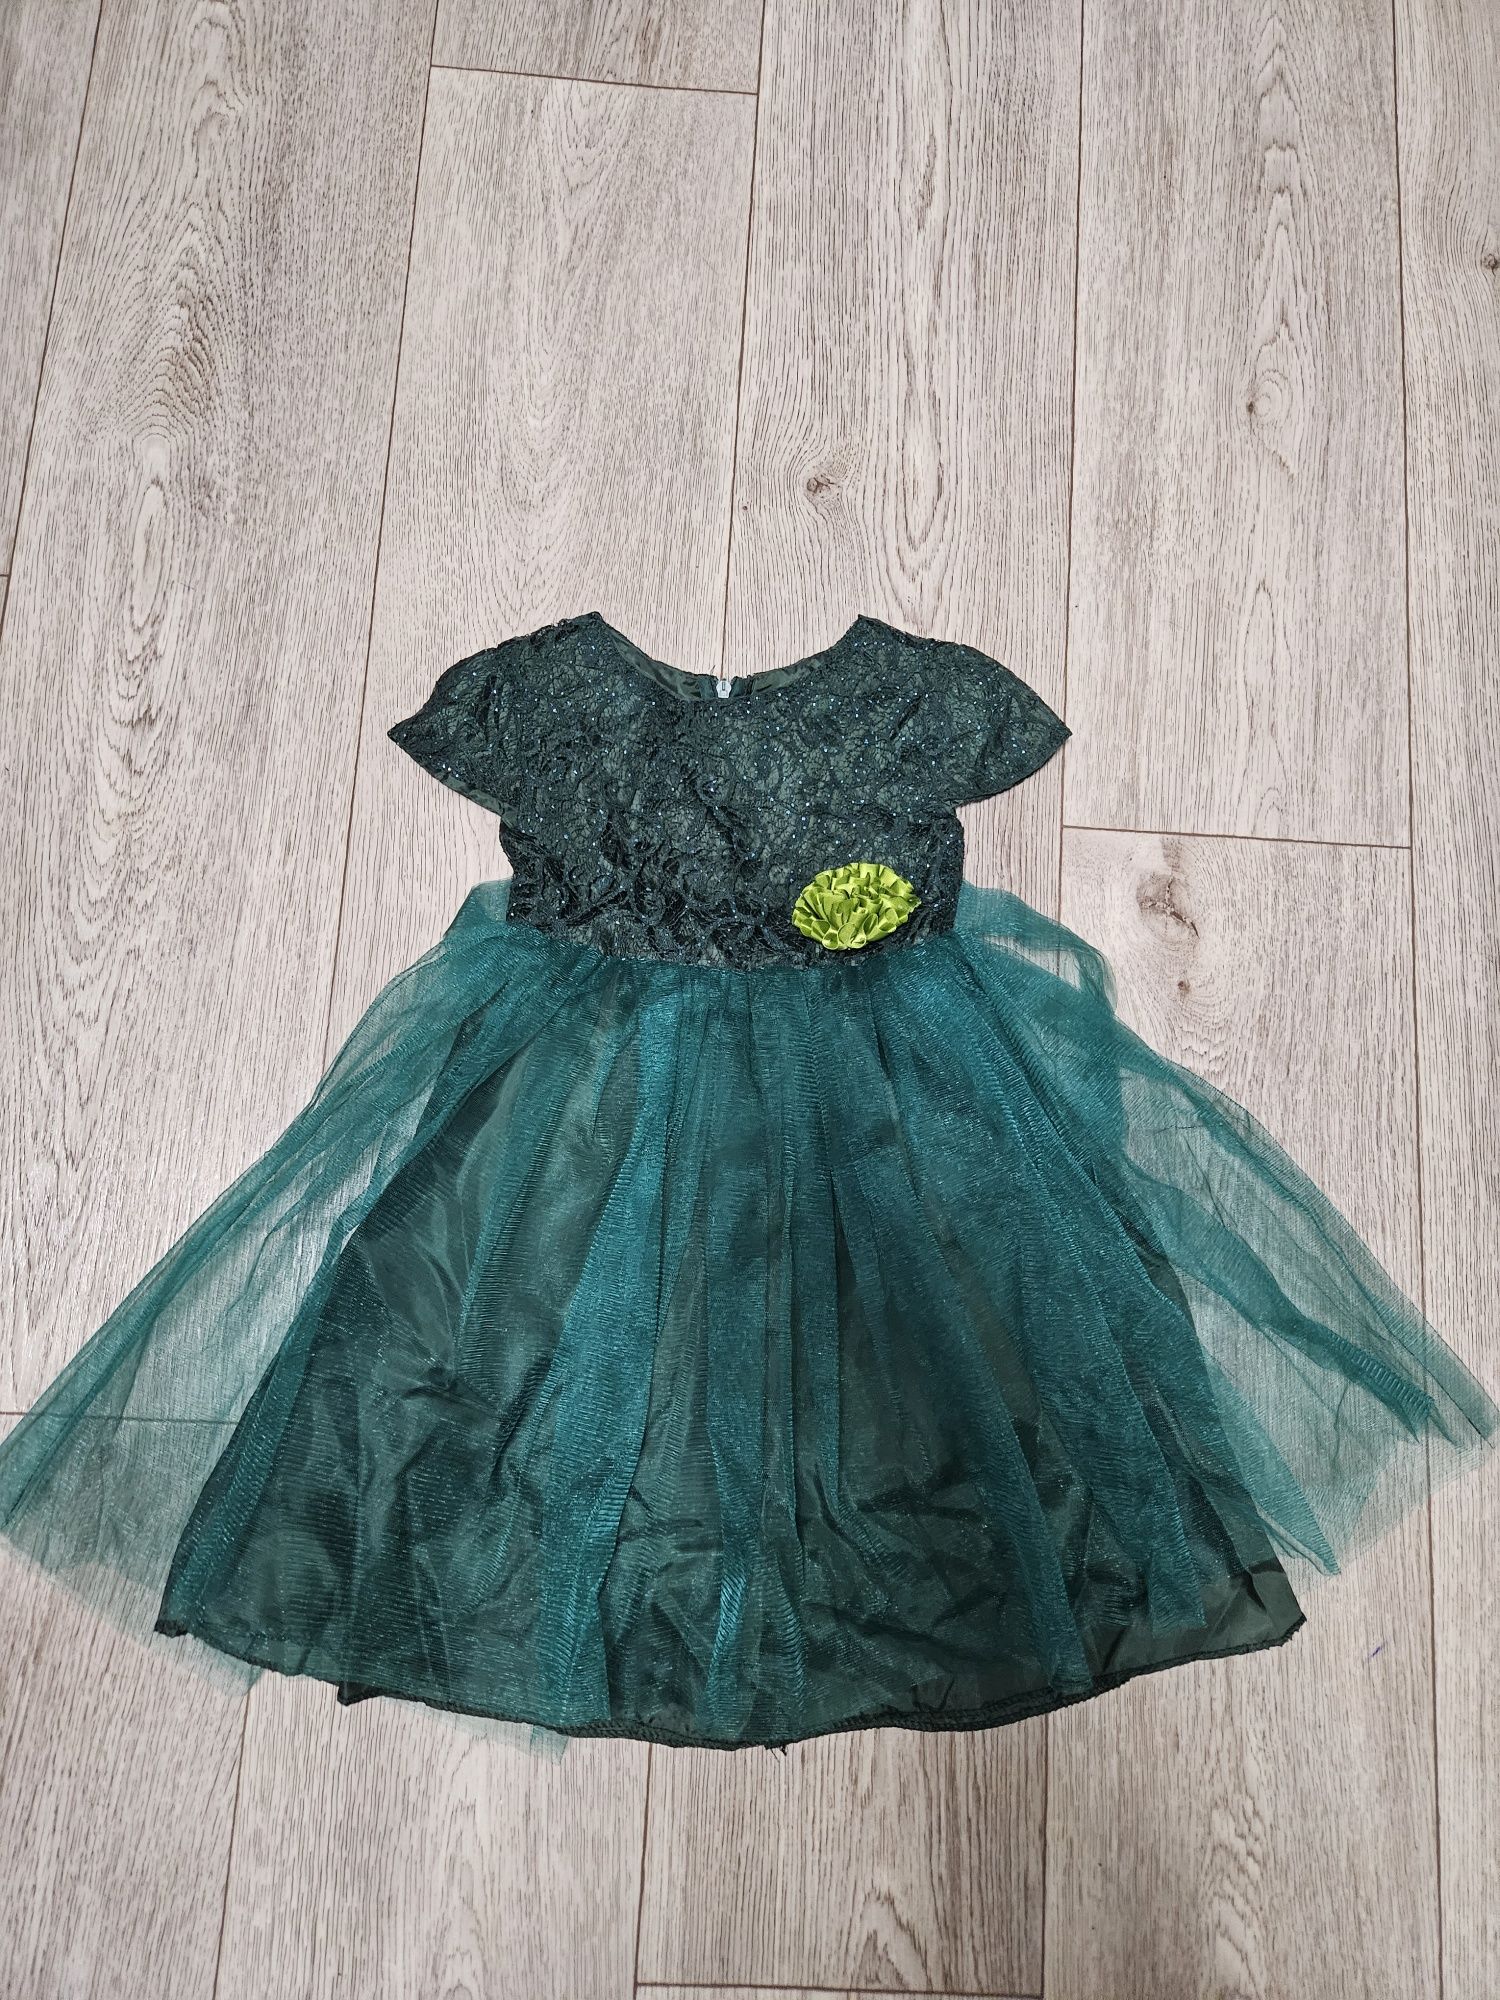 Продам платье детское зелёное